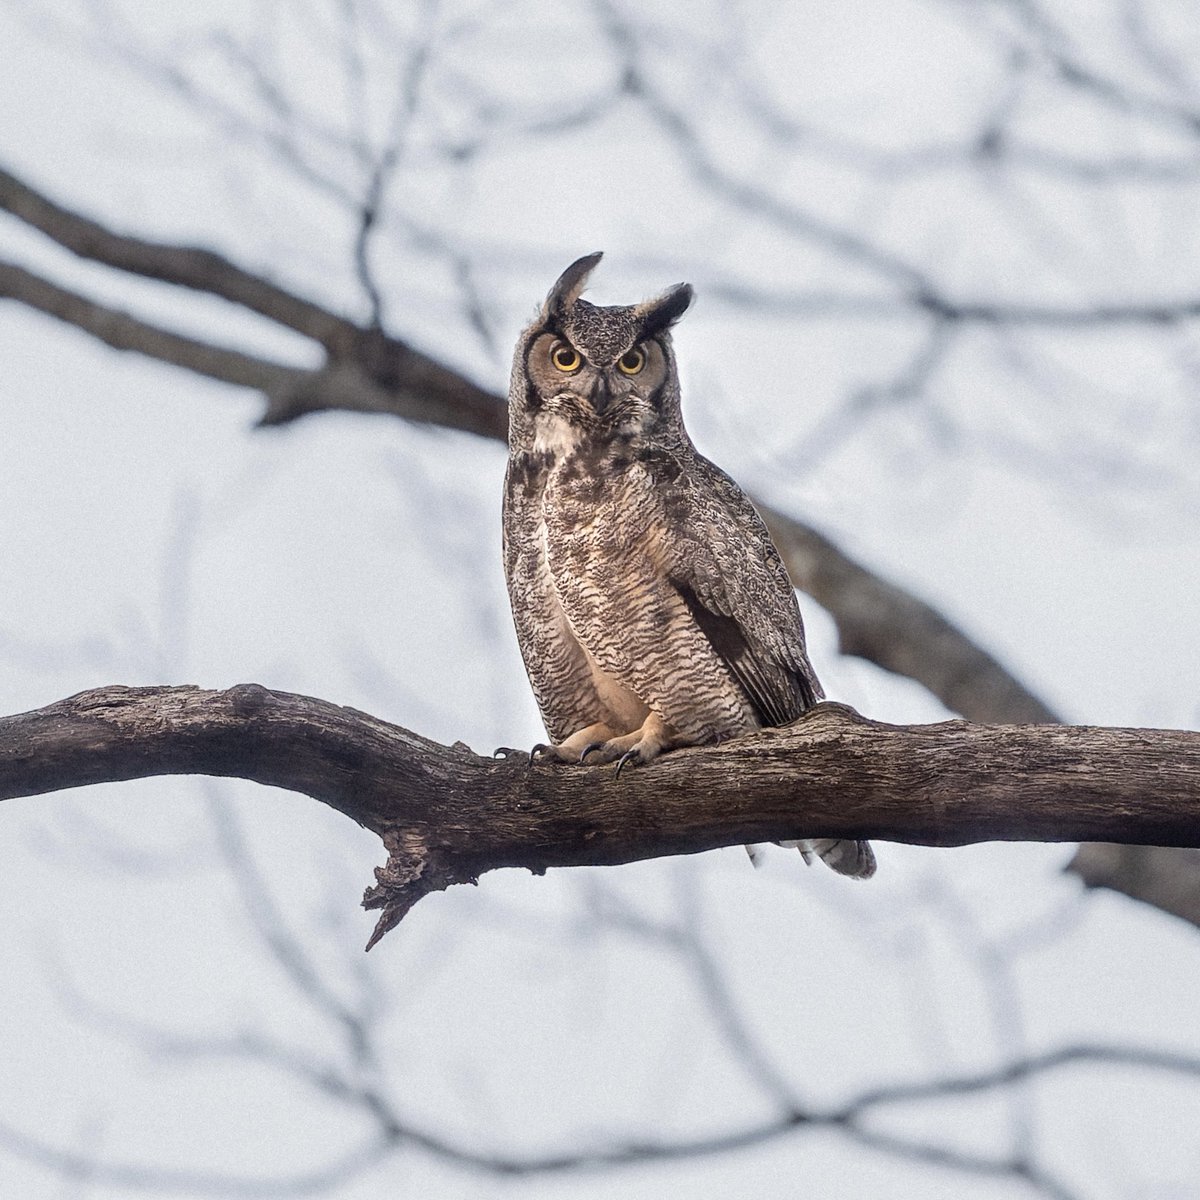 Great Horned Owl at dusk in Queens.💕🦉 #birds #birding